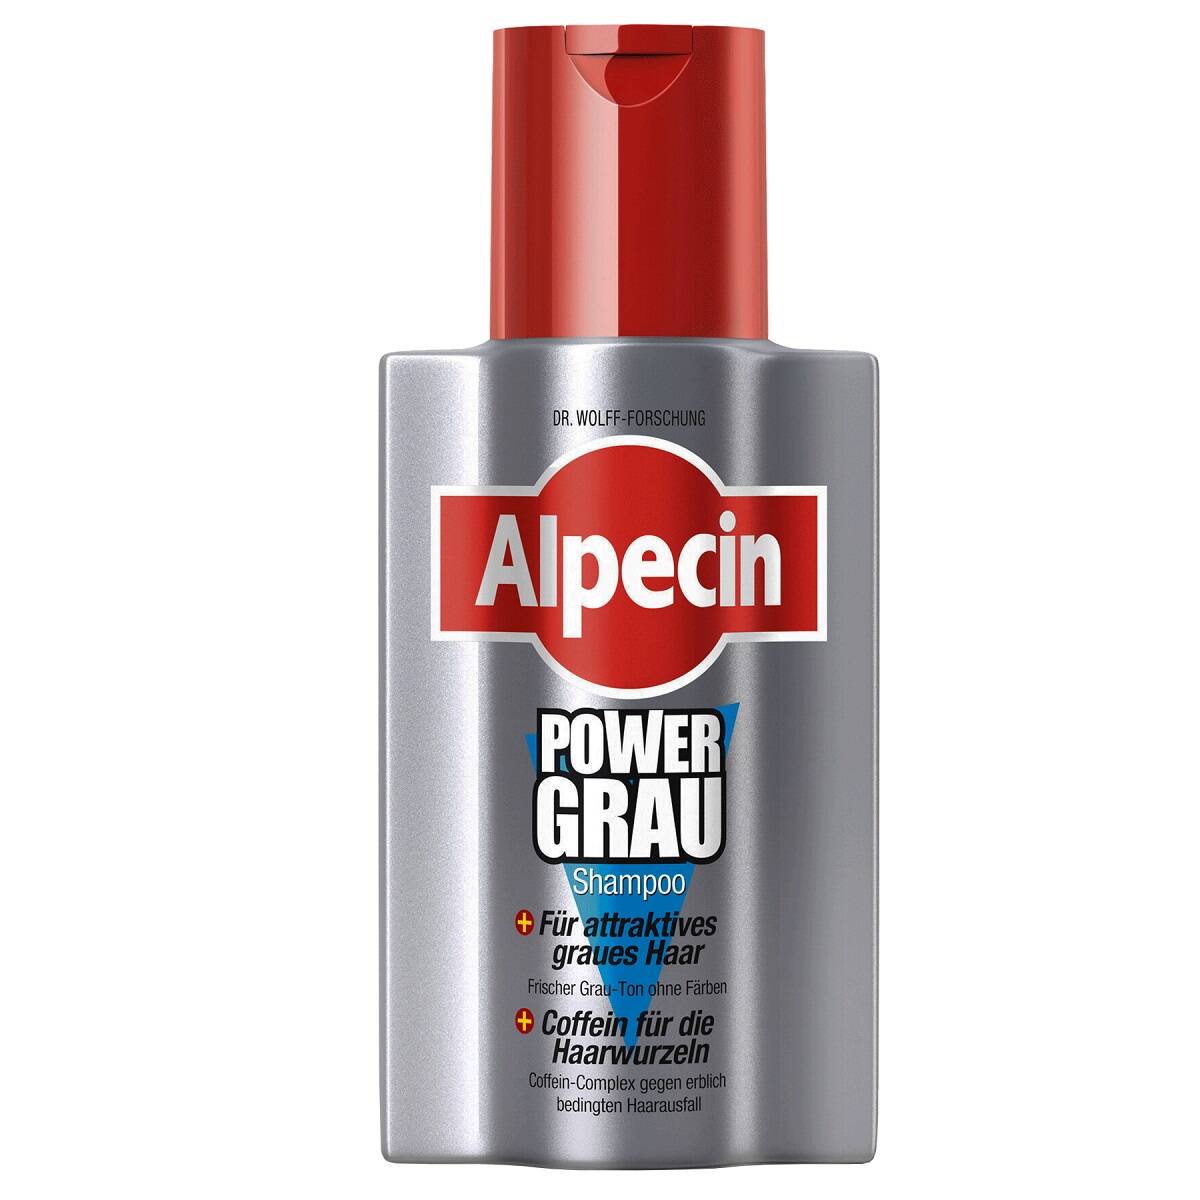 شامپو موهای خاکستری Power Grau آلپسین - ضد ریزش و مخصوص موی خاکستری و حذف زردی مو - Alpecin PowerGrau Shampoo 200ml